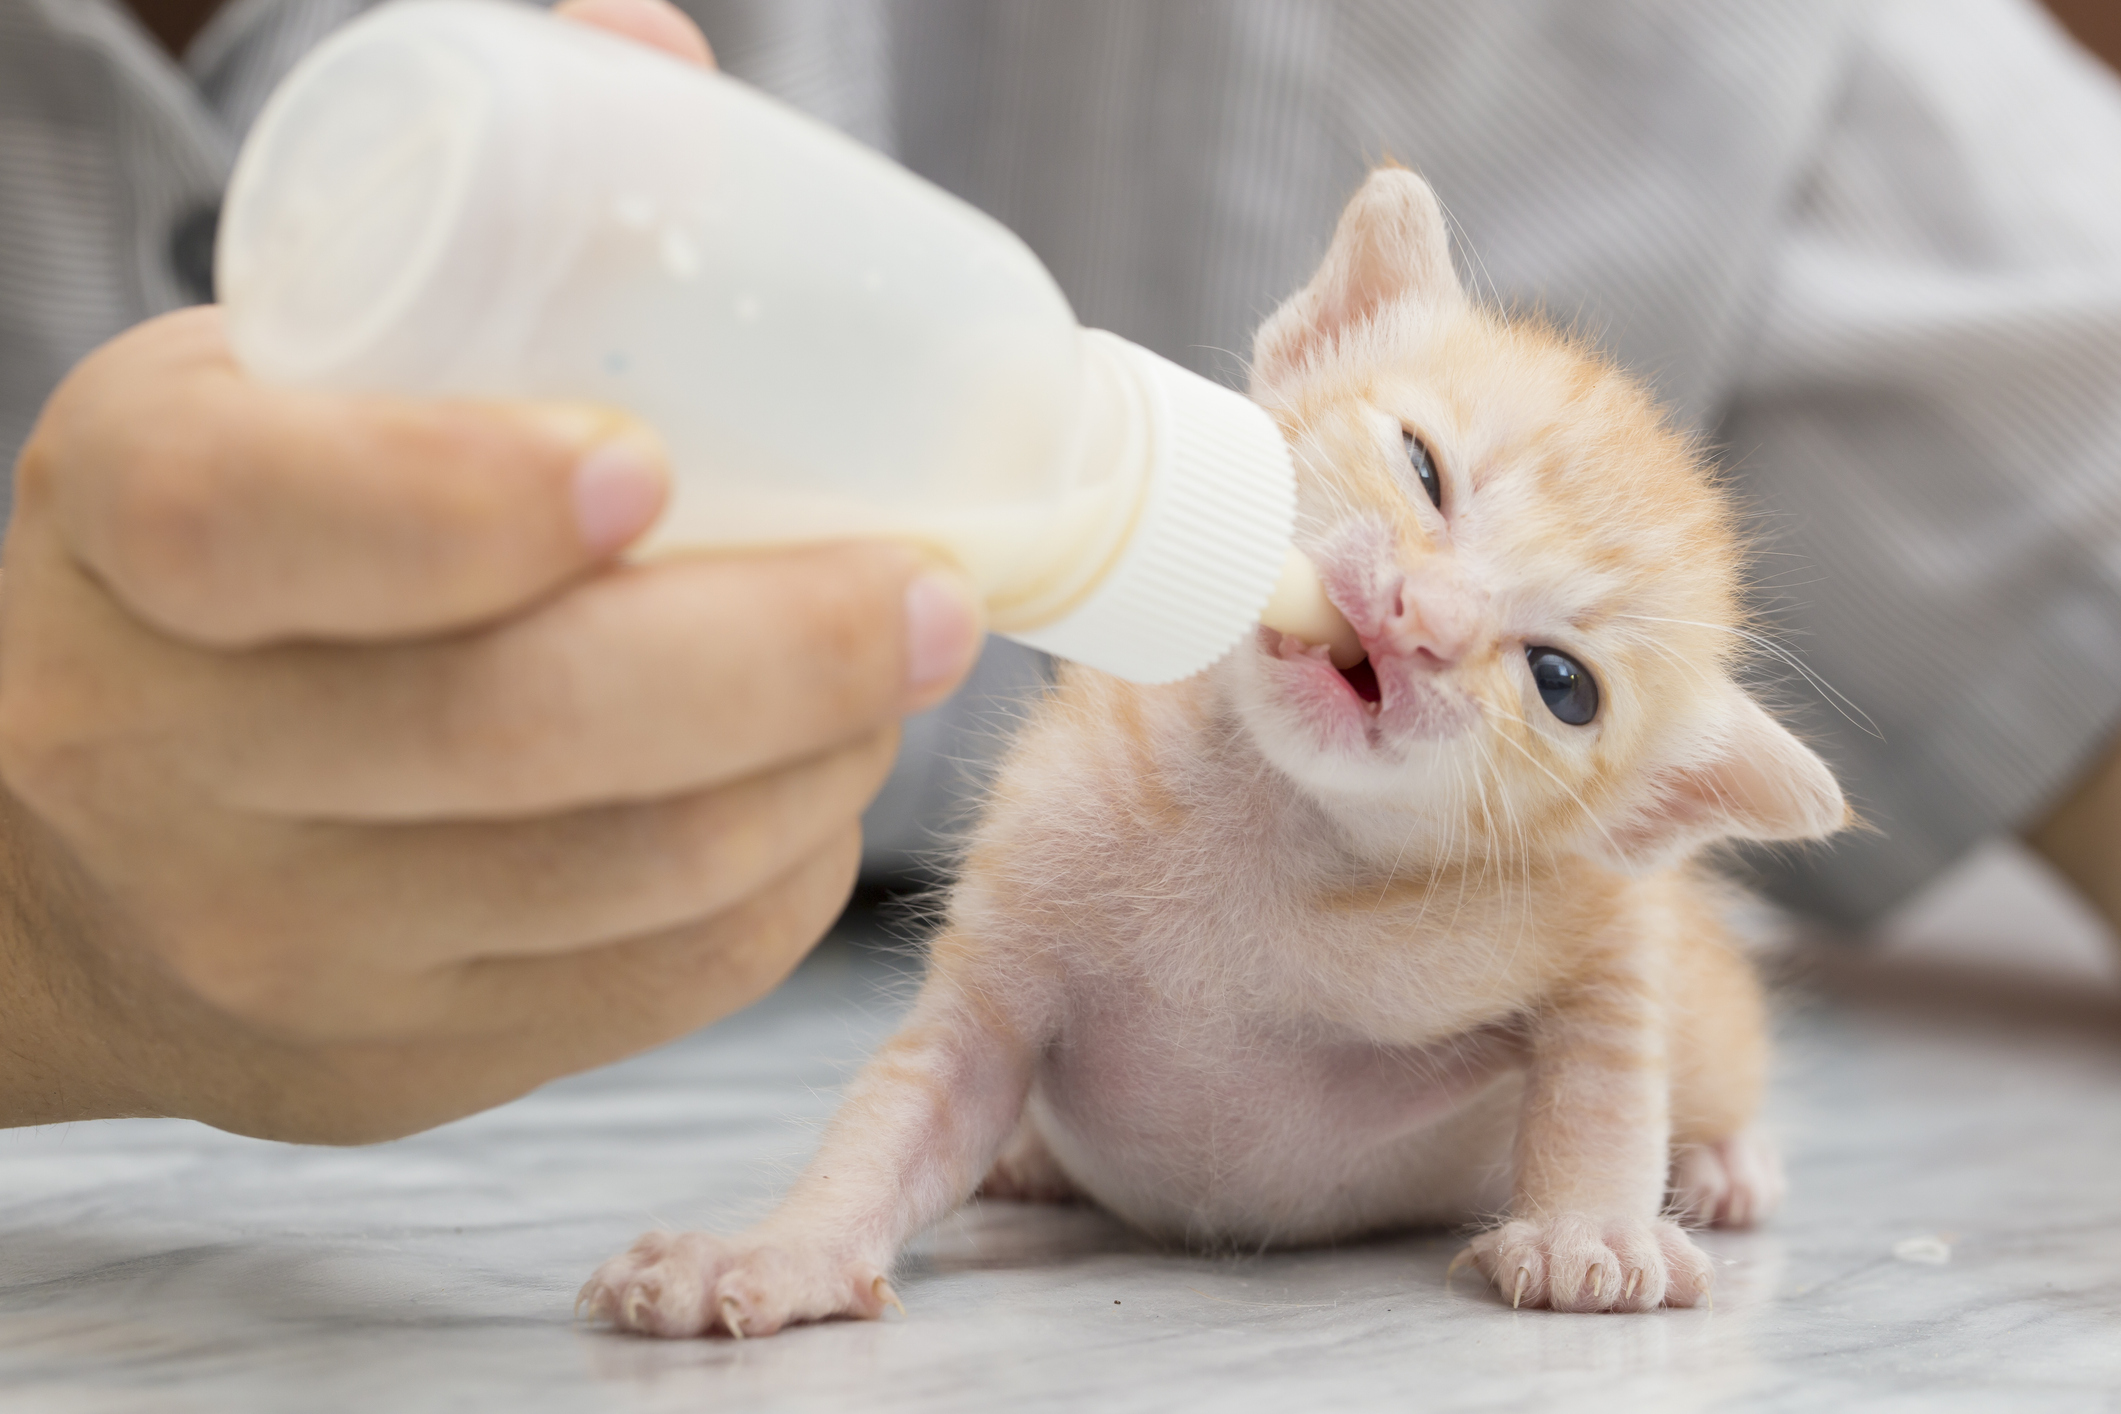 Closeup of orange tabby neonatal kitten foster drinking from a bottle